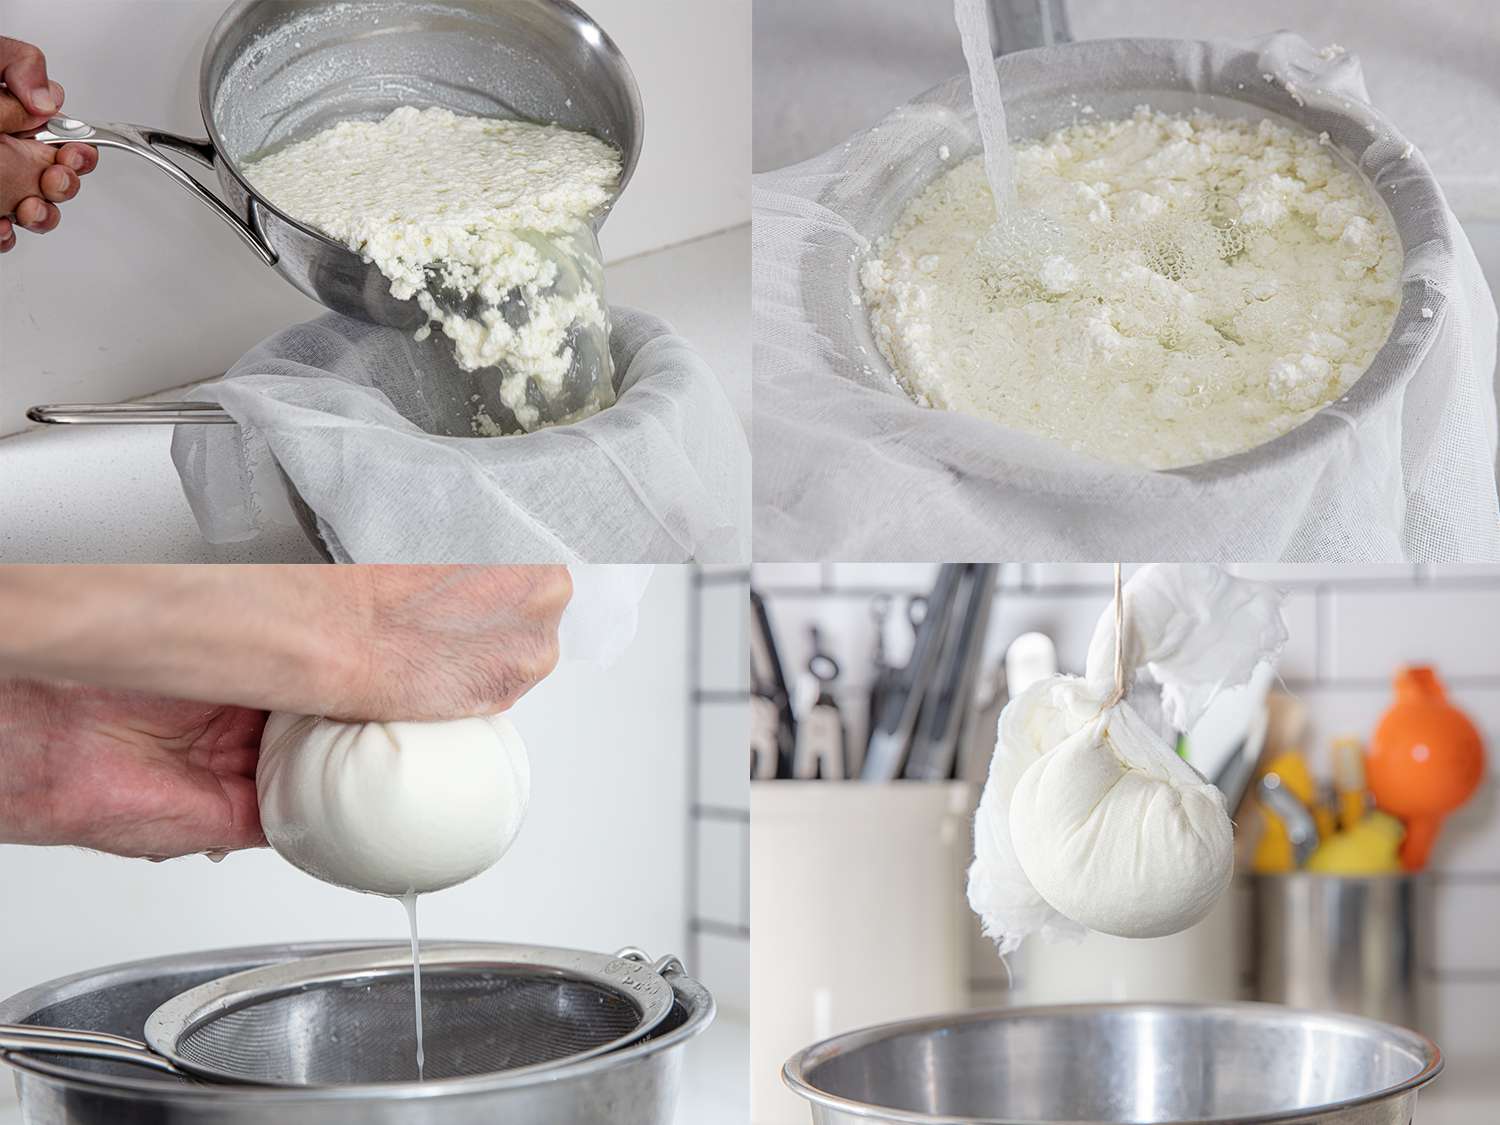 四幅图像拼贴。从左上起顺时针方向:将凝乳倒入一个有粗棉布衬里的筛子中;凝乳在水下运行;奶酪布拧在碗上，液体滴落;奶酪布挂在碗上。